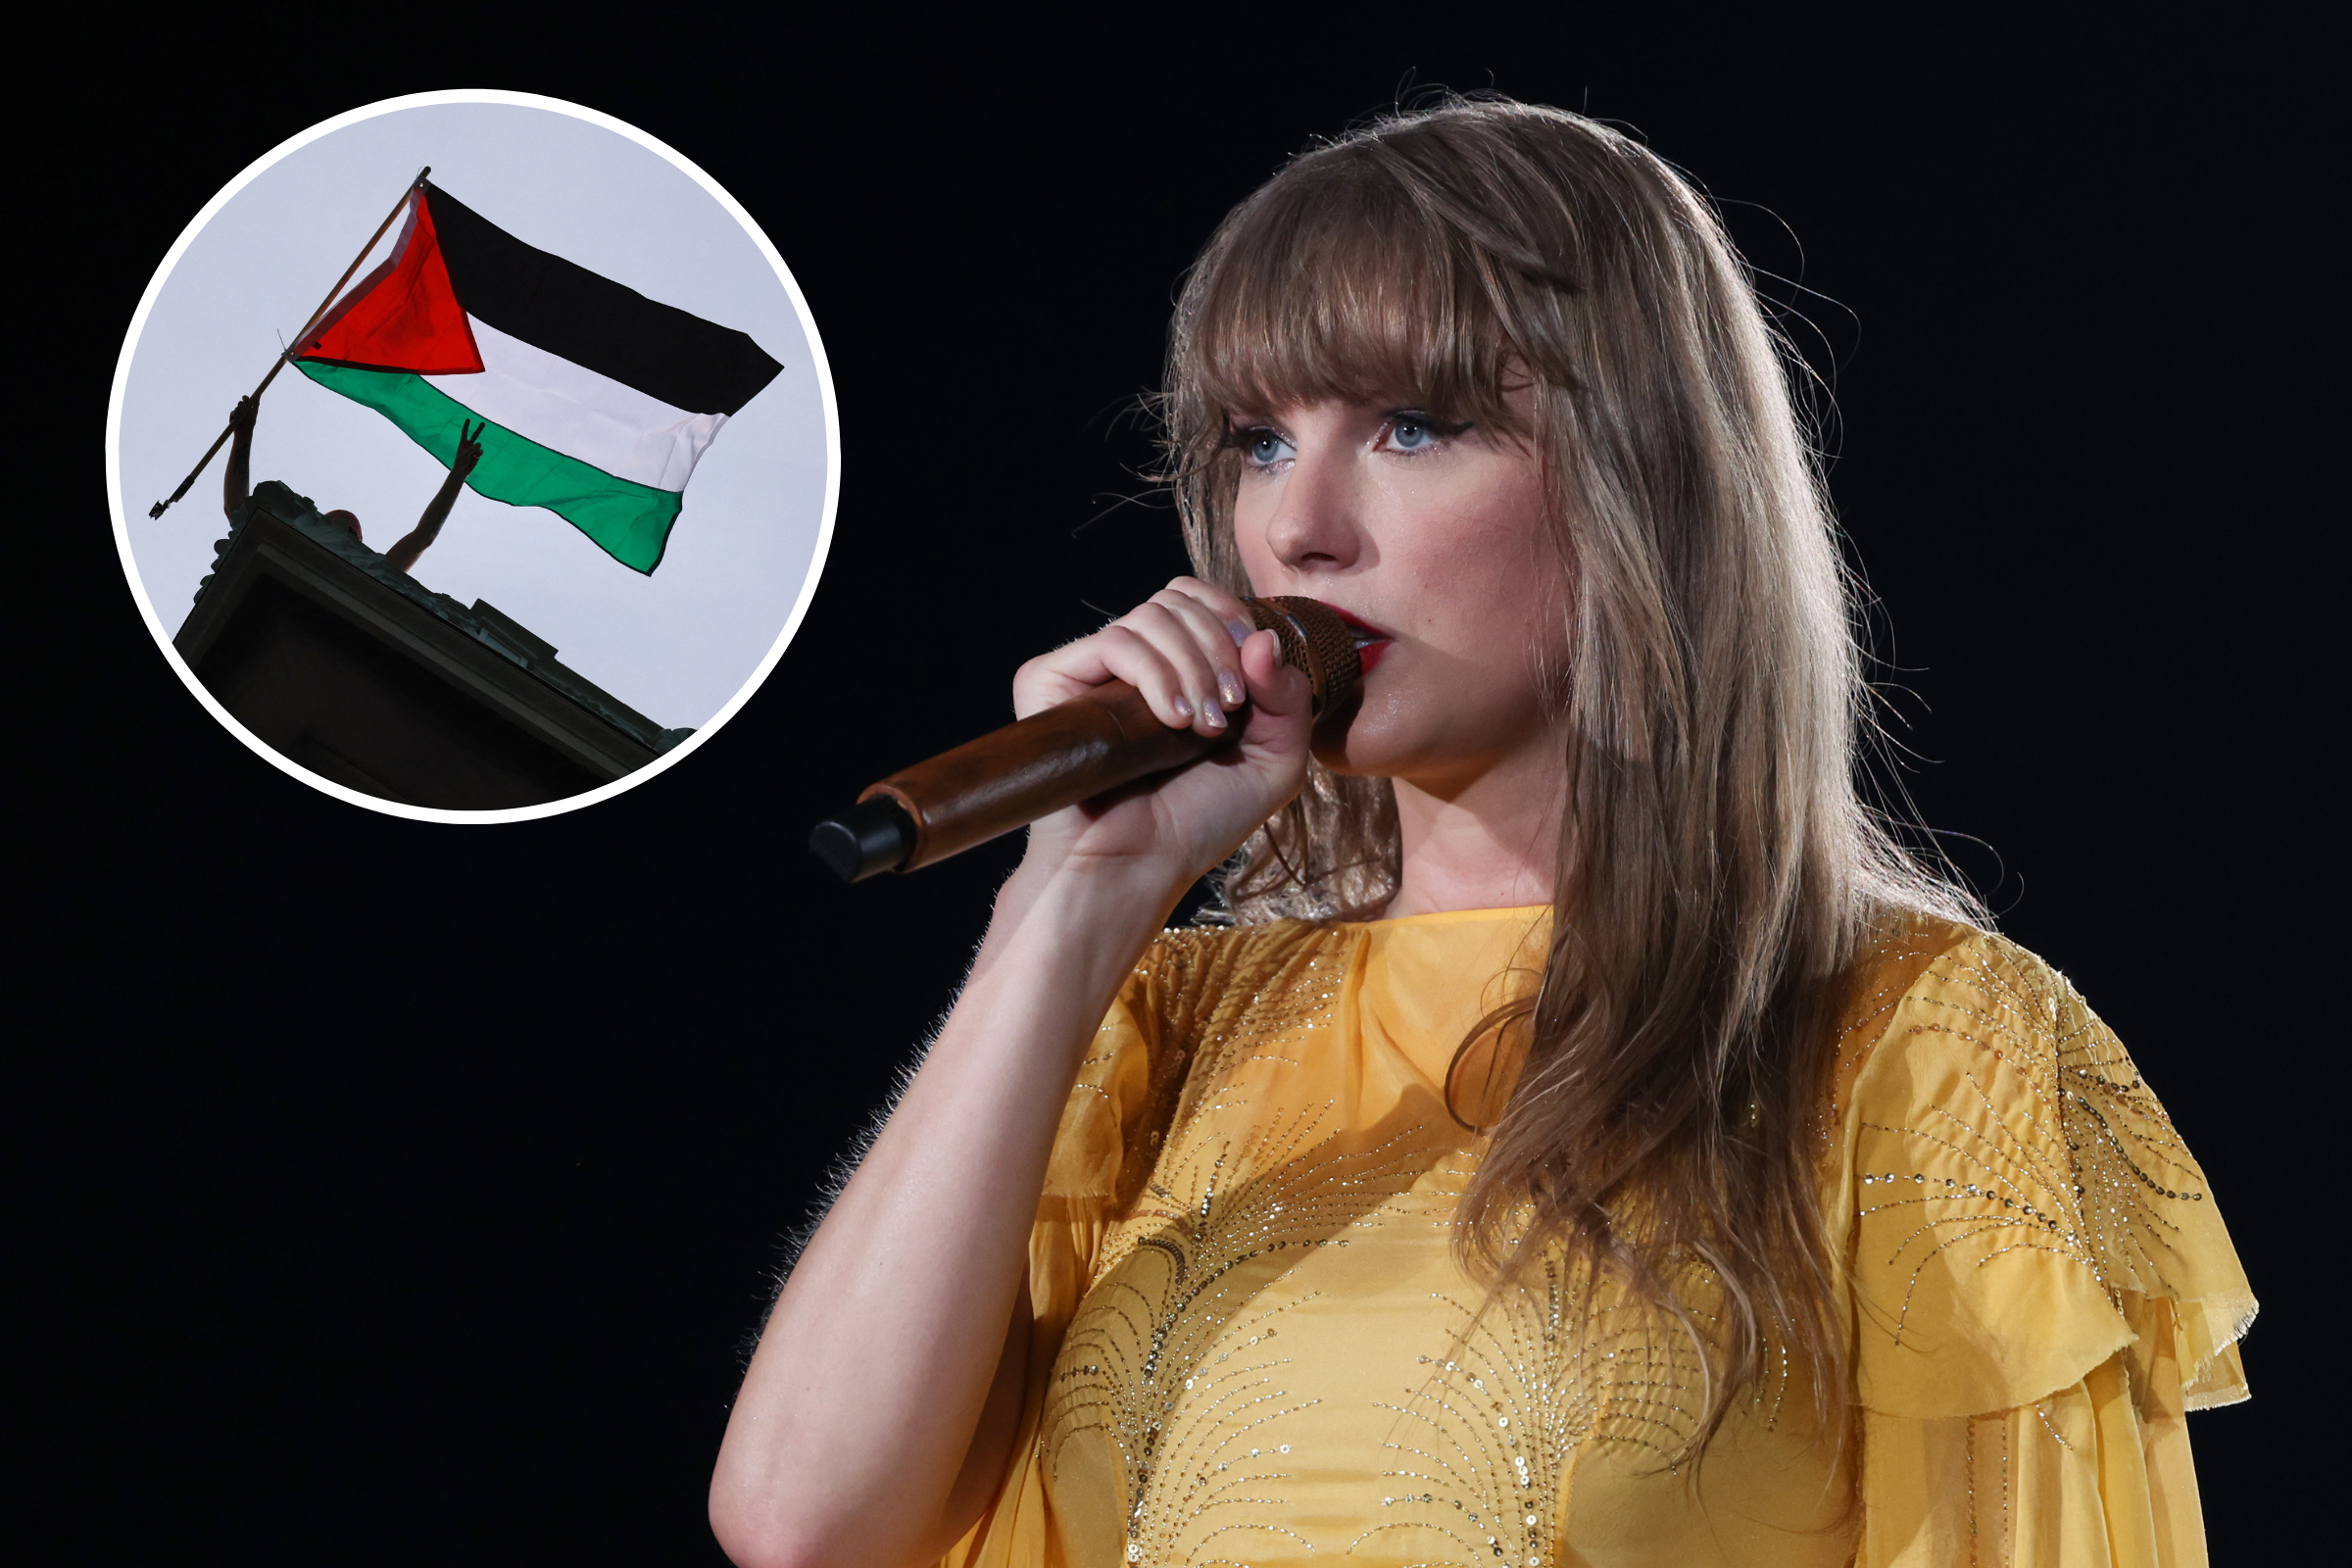 Le groupe Swifties for Palestine plaide auprès du chanteur pour qu’il s’exprime sur la guerre en Israël